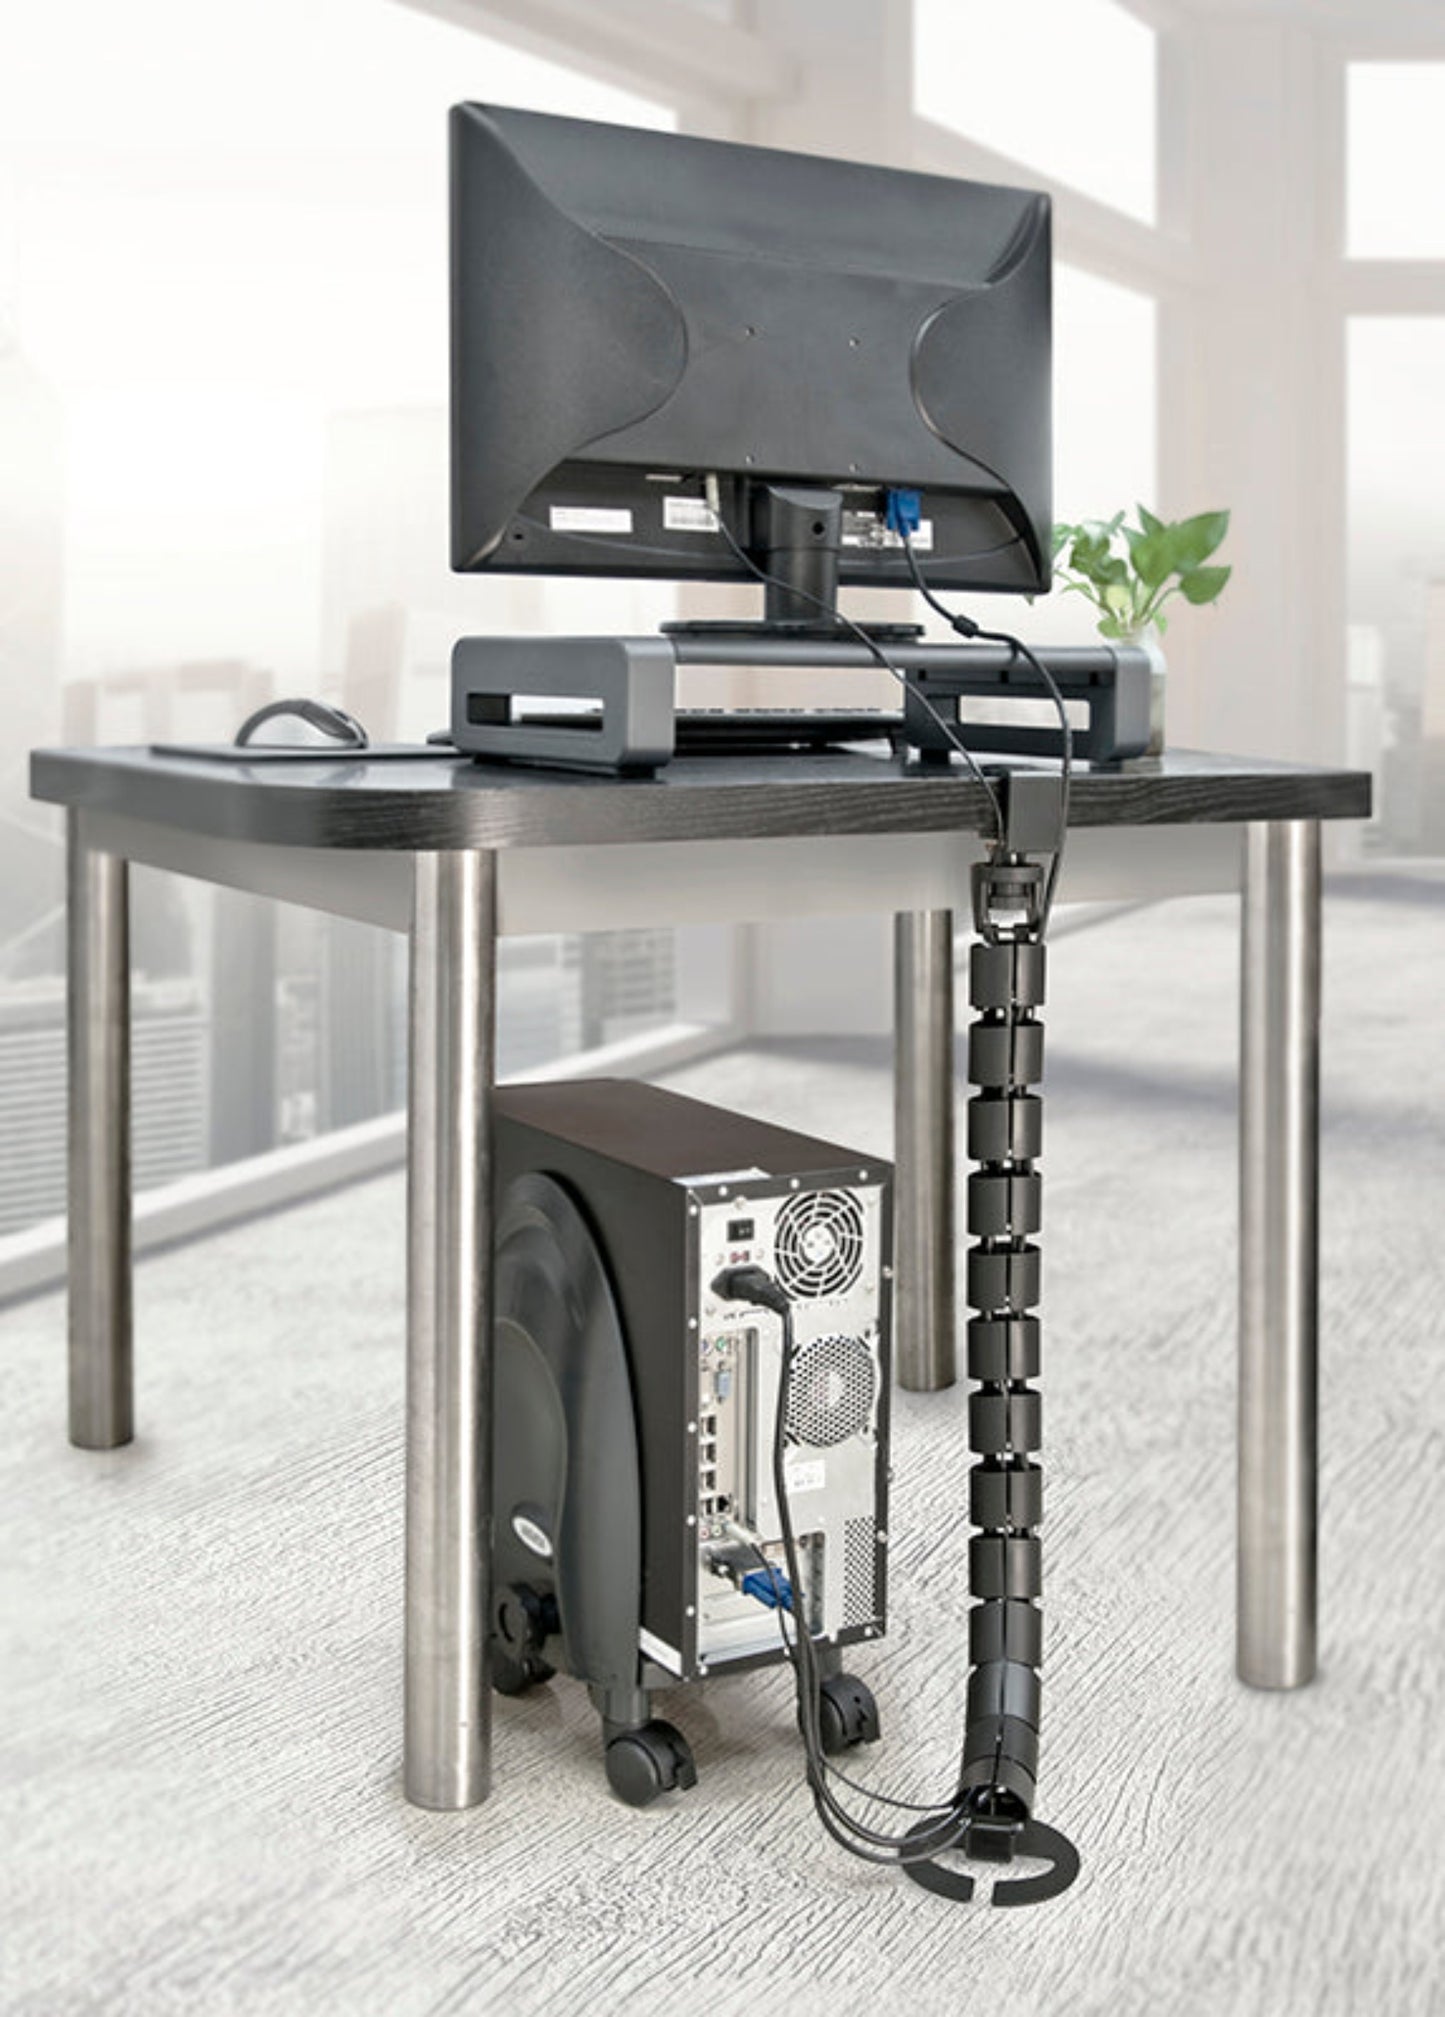 Desk-Clamp Under Desk Spine Cable Manager